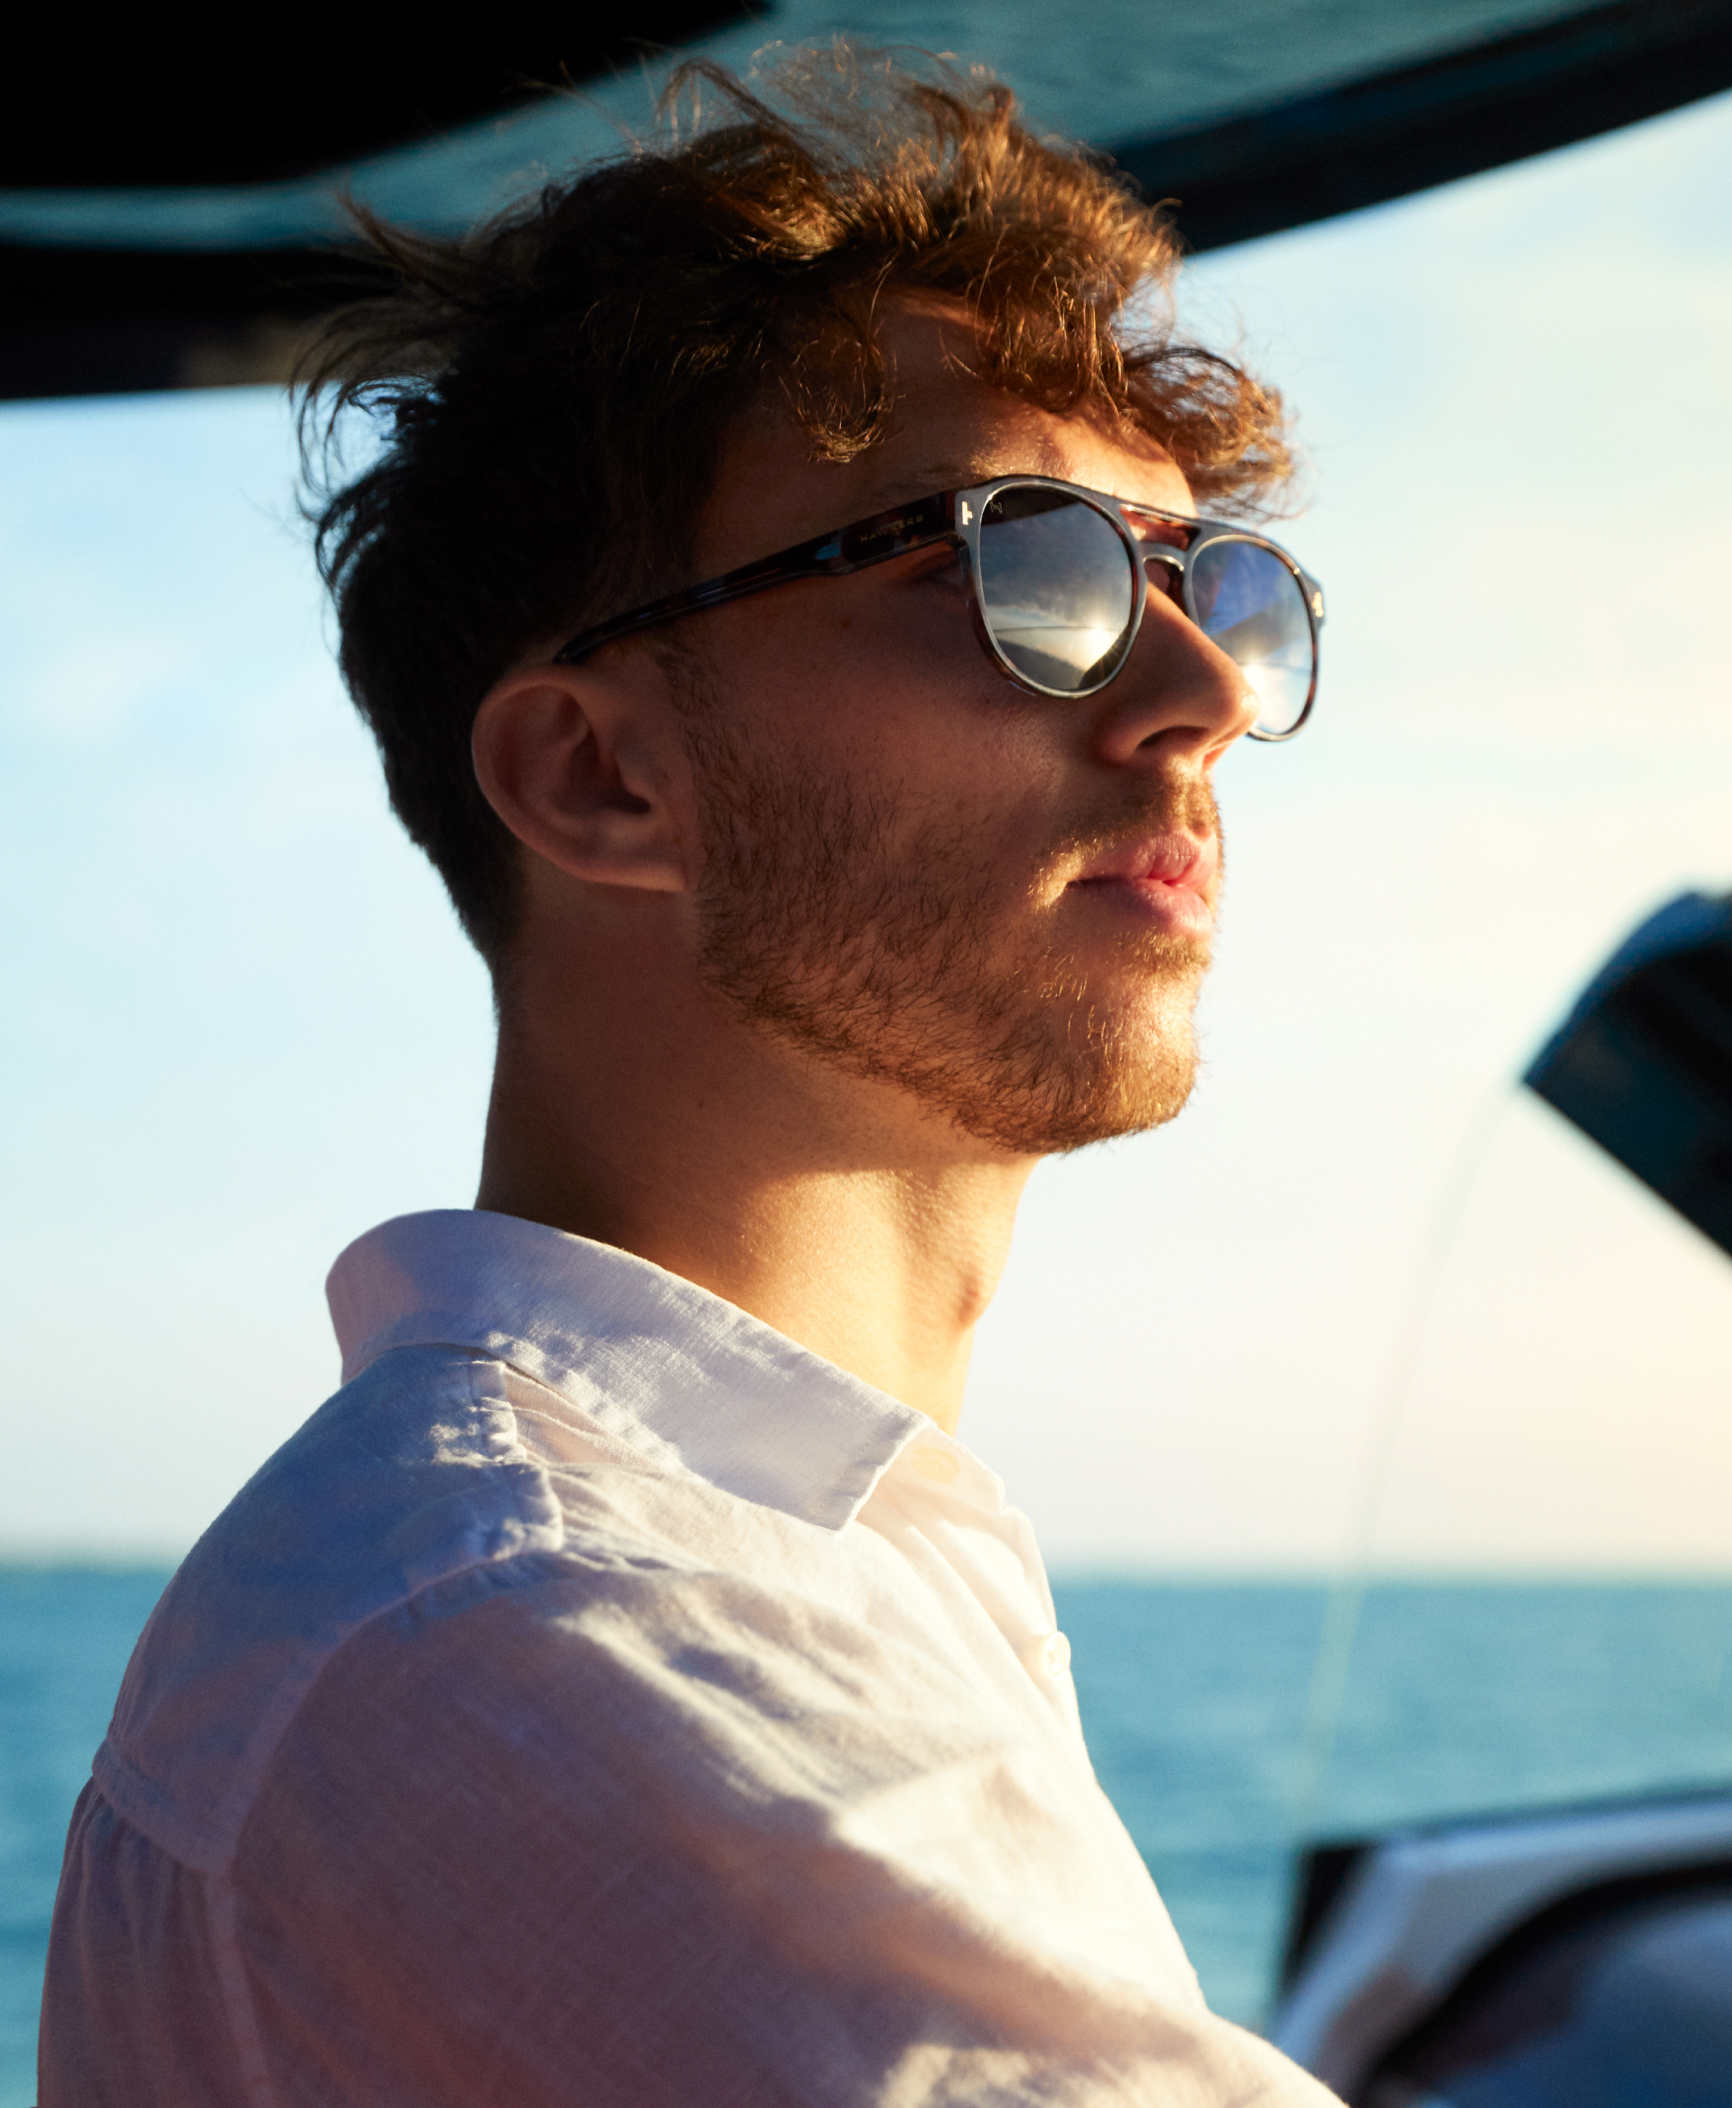 teenagere træk uld over øjnene Meningsløs Sunglasses Hawkers® Official Store